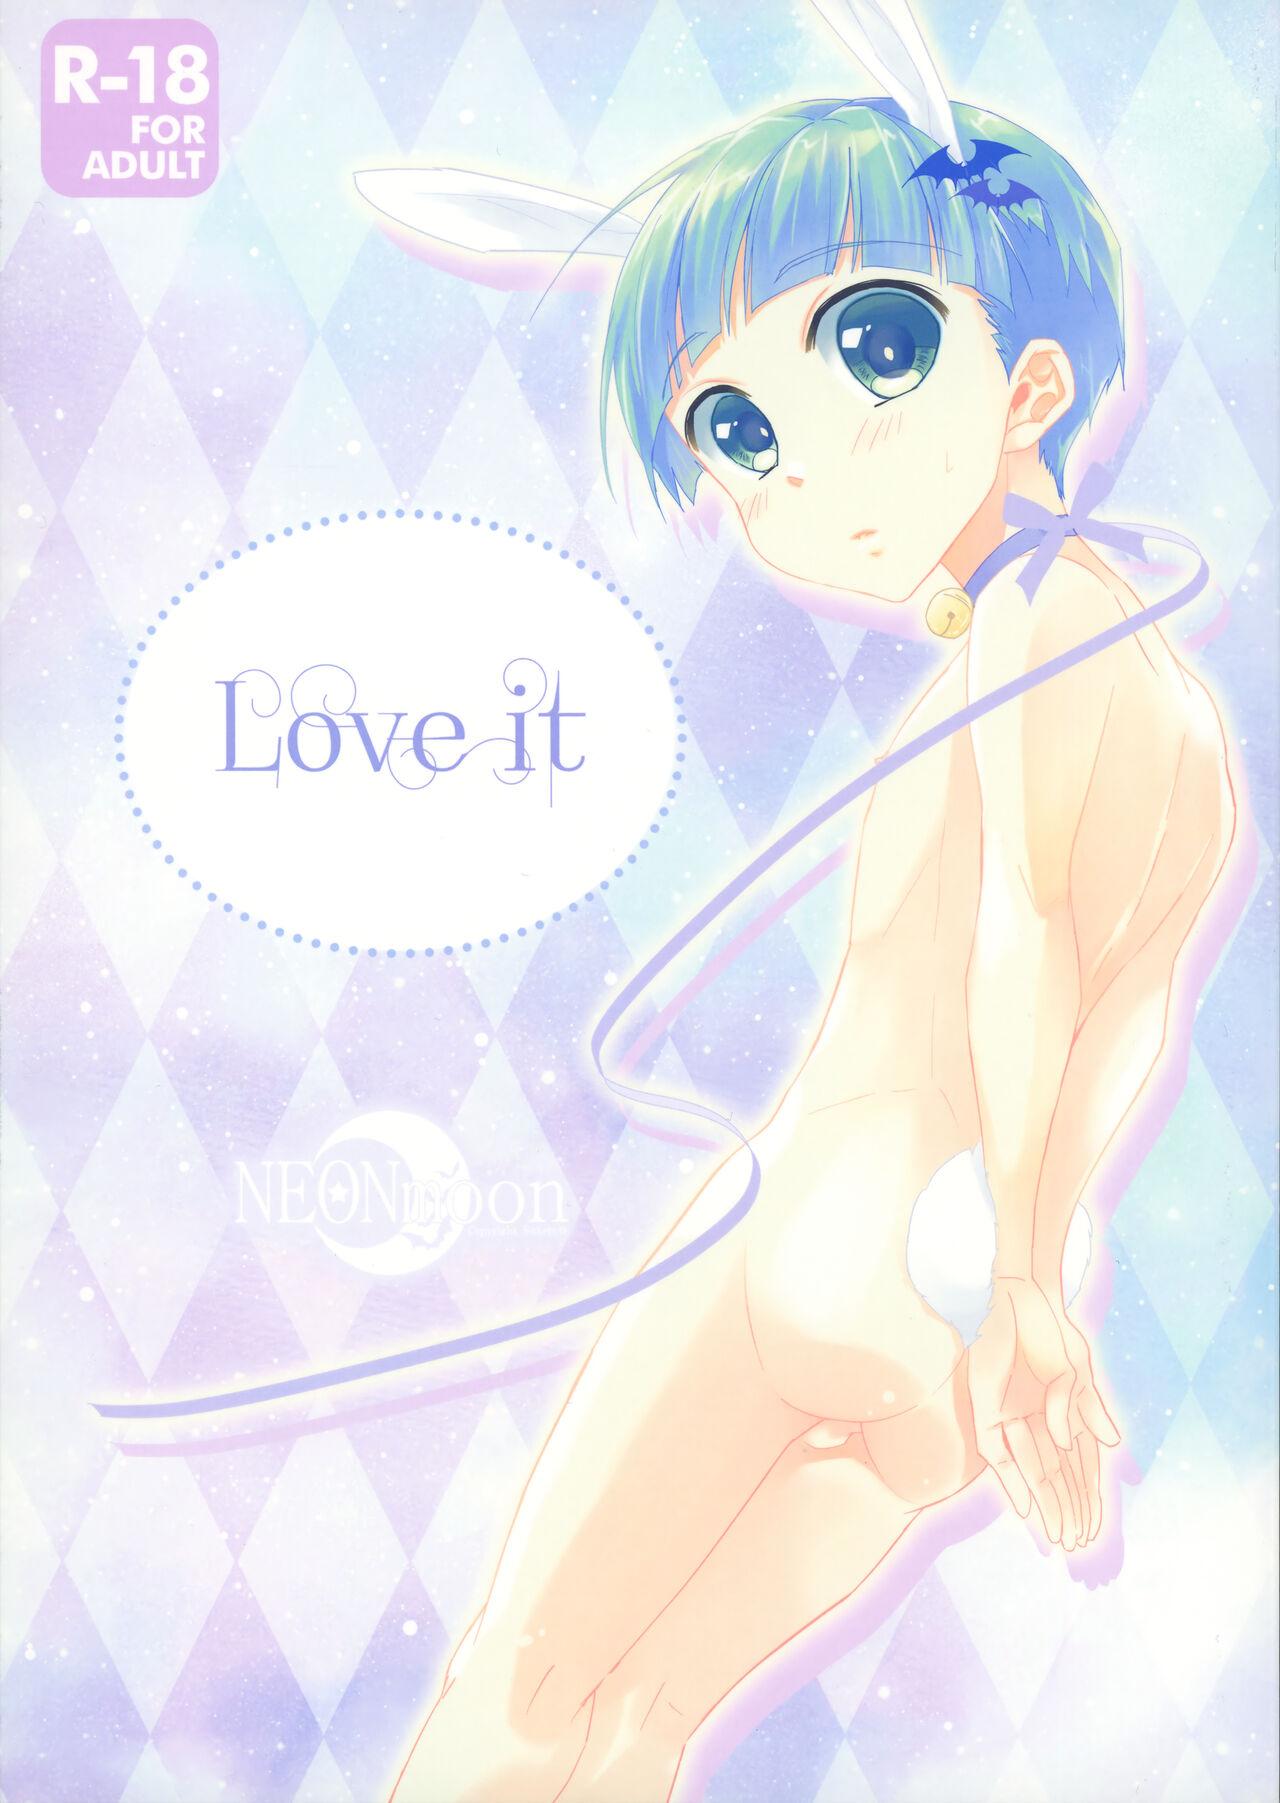 Love it (ショタスクラッチ33) [NEONMoon (すけ太☆)]  0